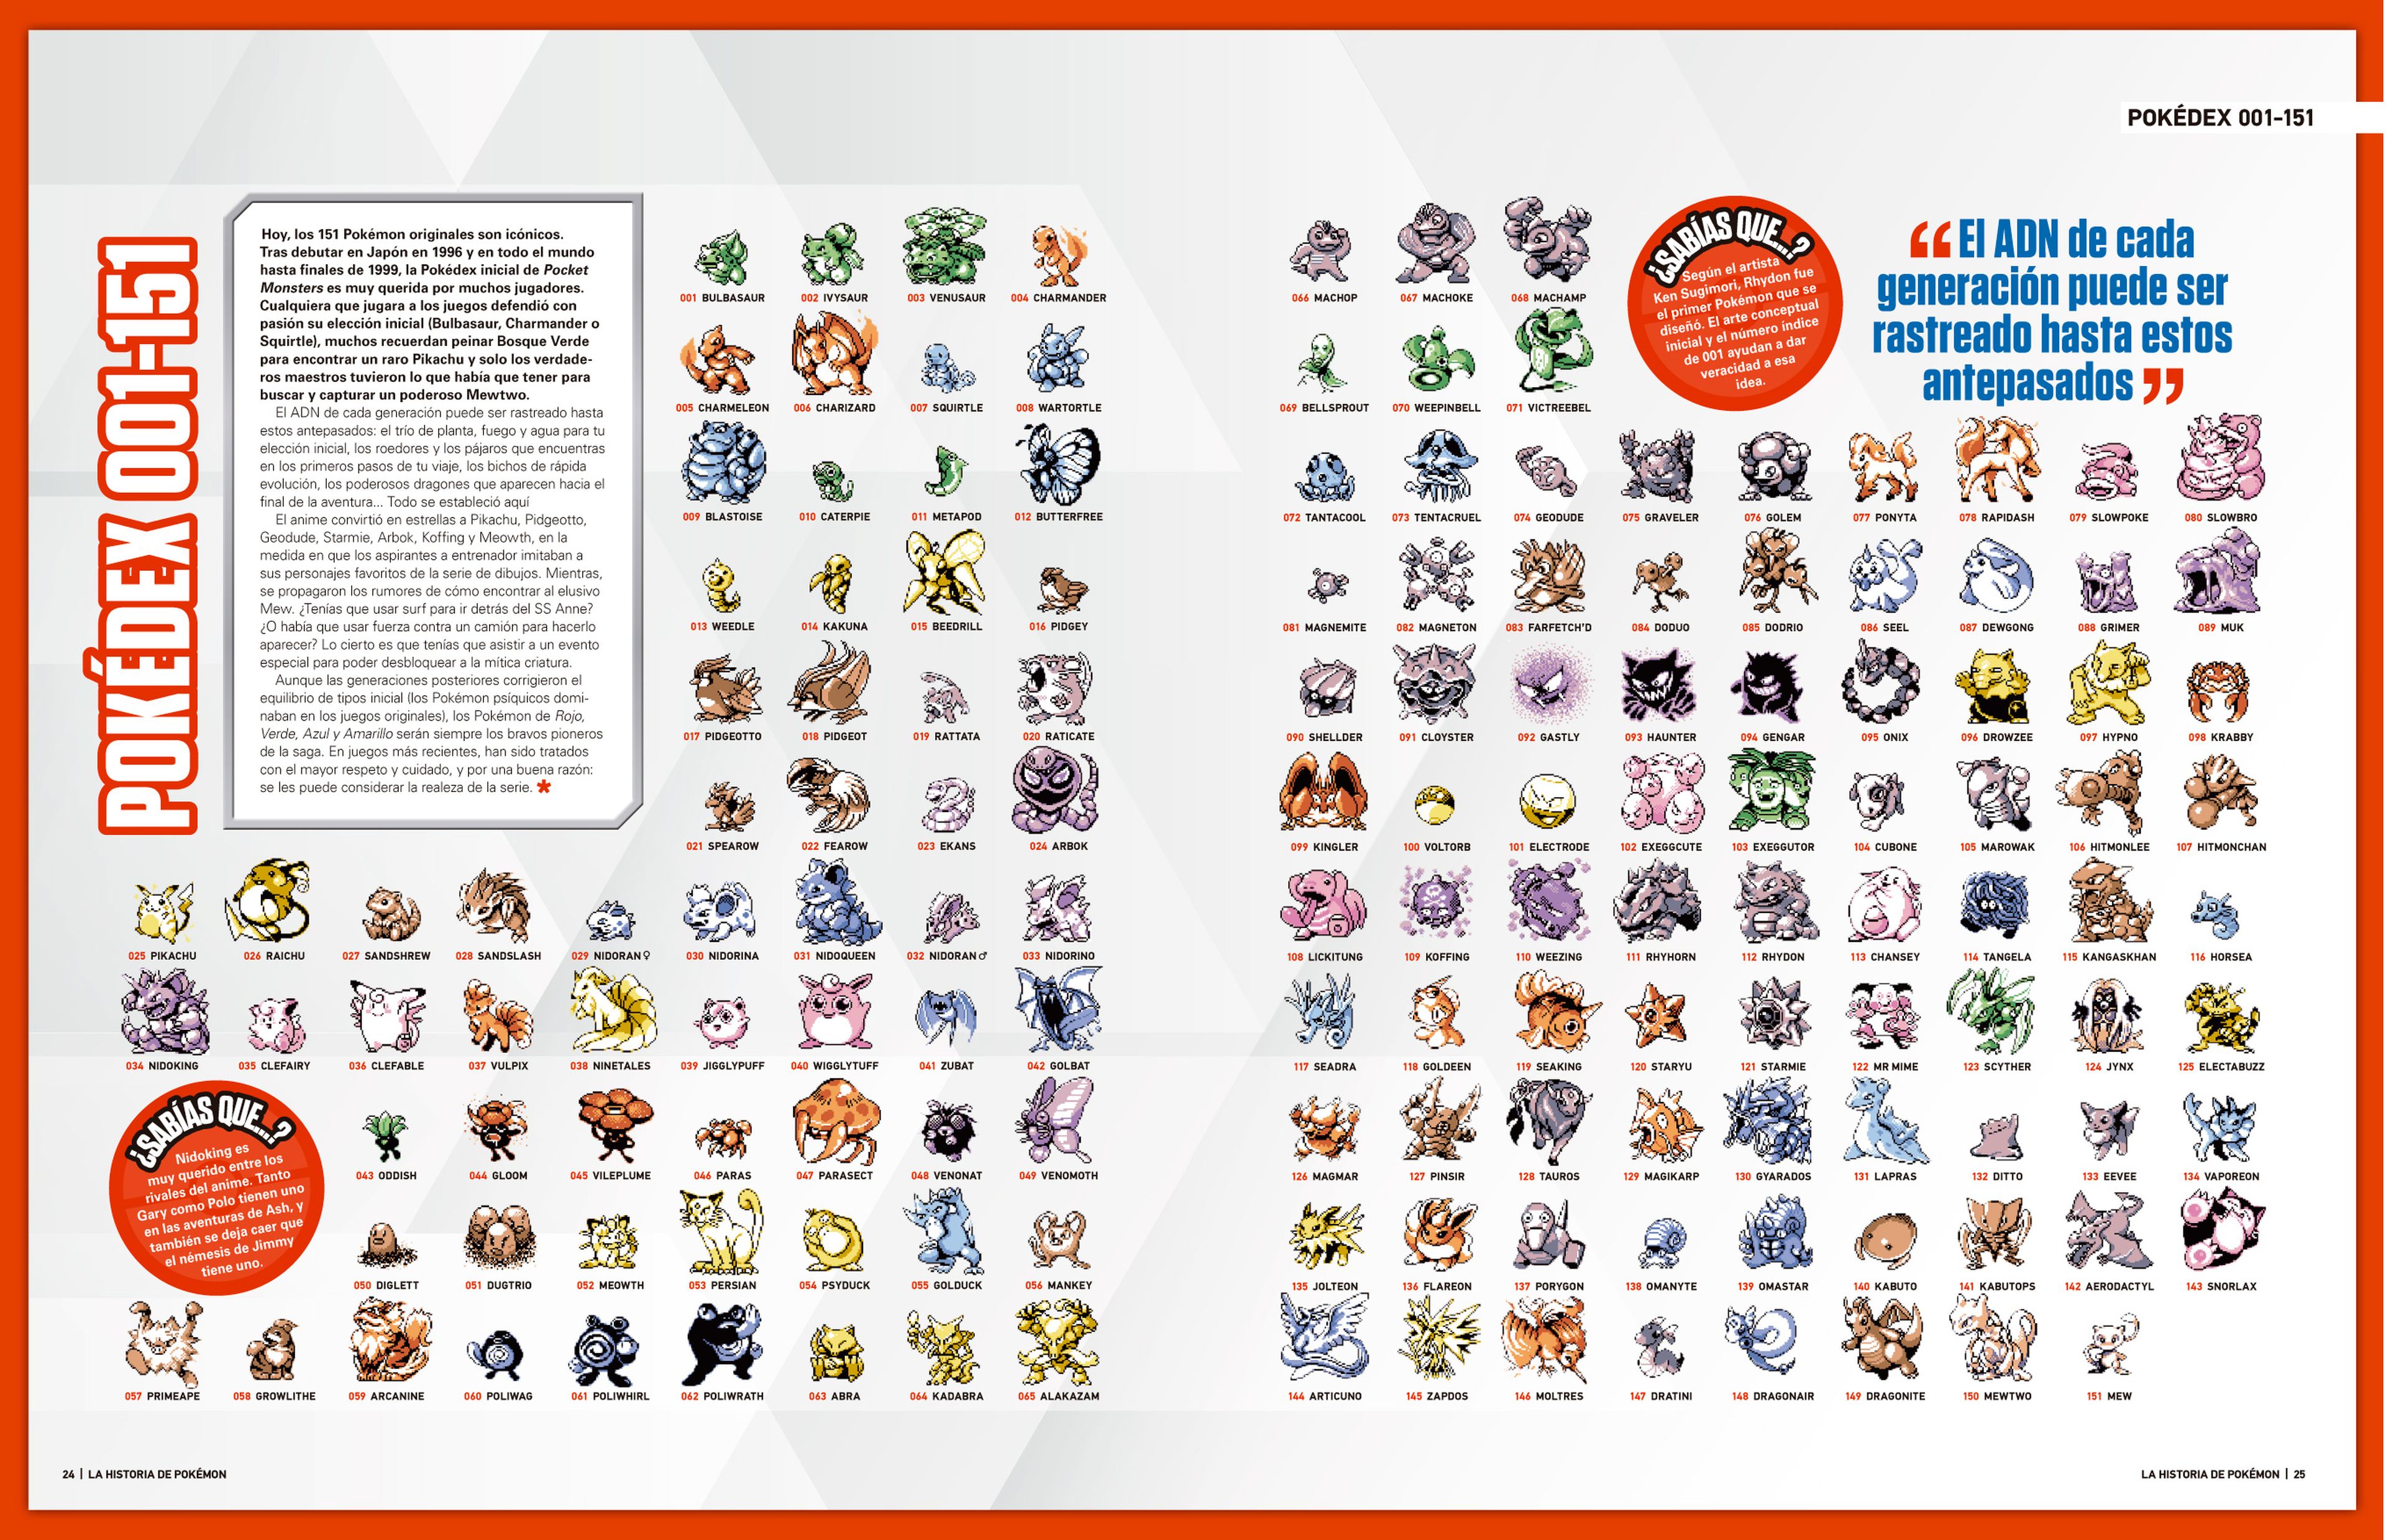 Especial Pokémon 25º aniversario , ya a la venta: ¡132 páginas de repaso de la saga!